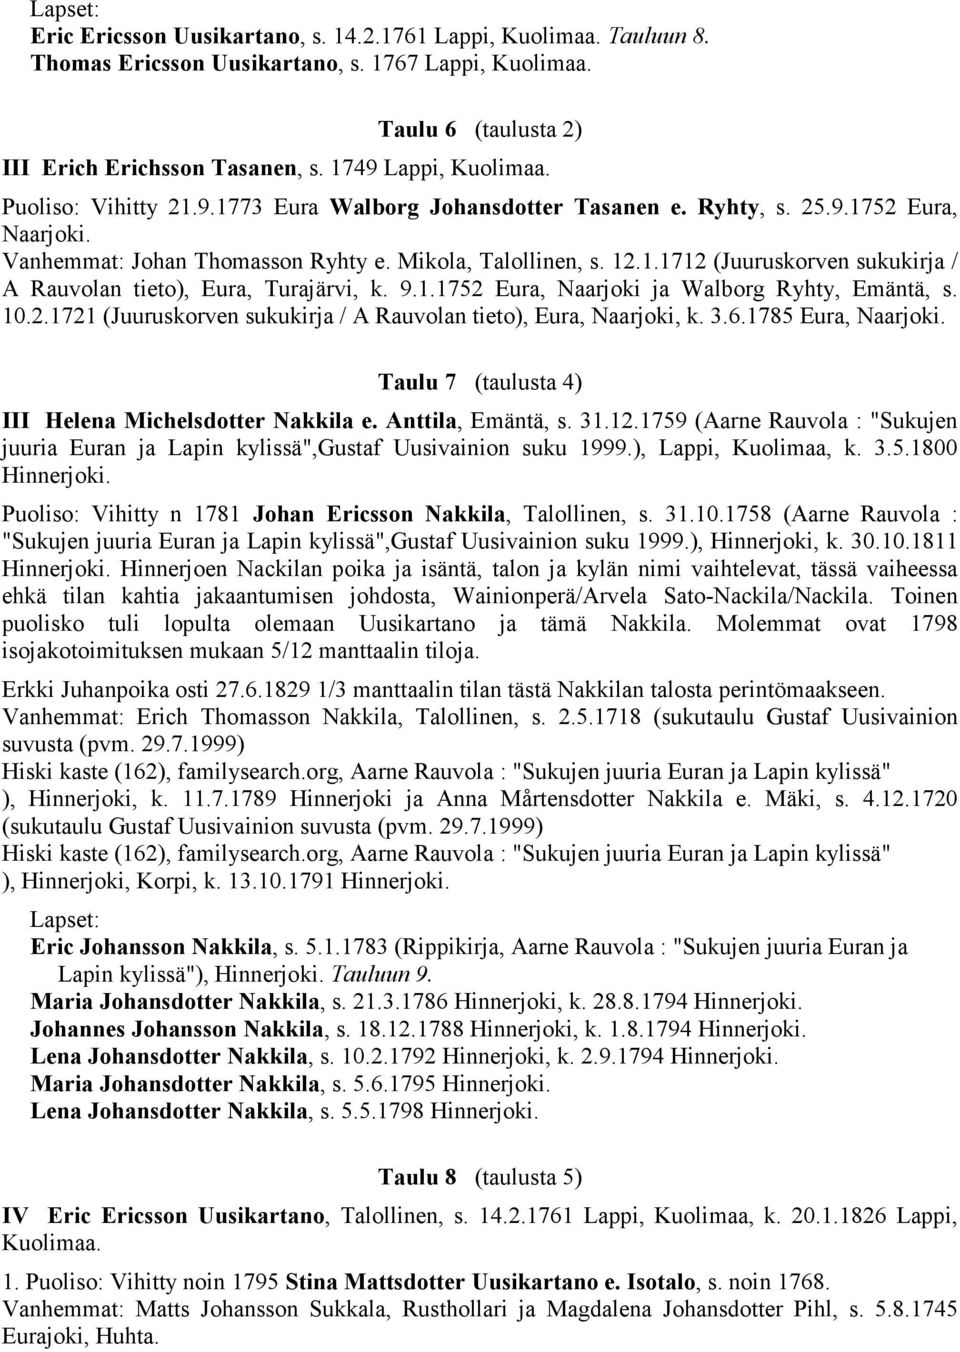 9.1.1752 Eura, Naarjoki ja Walborg Ryhty, Emäntä, s. 10.2.1721 (Juuruskorven sukukirja / A Rauvolan tieto), Eura, Naarjoki, k. 3.6.1785 Eura, Naarjoki.